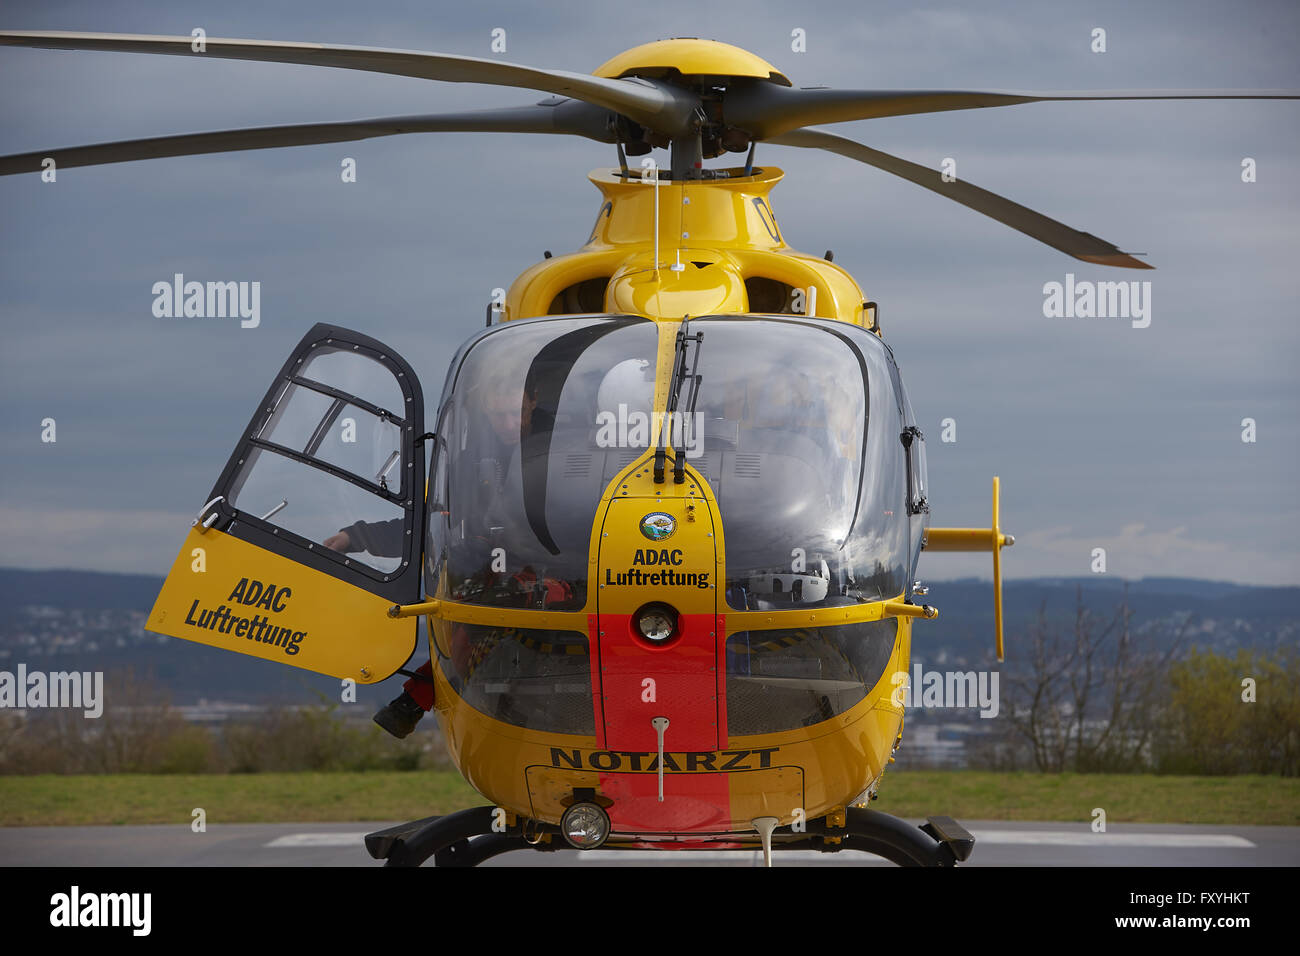 Hélicoptère de sauvetage ADAC Eurocopter EC 135, départ air rescue, urgence, Allemagne Banque D'Images